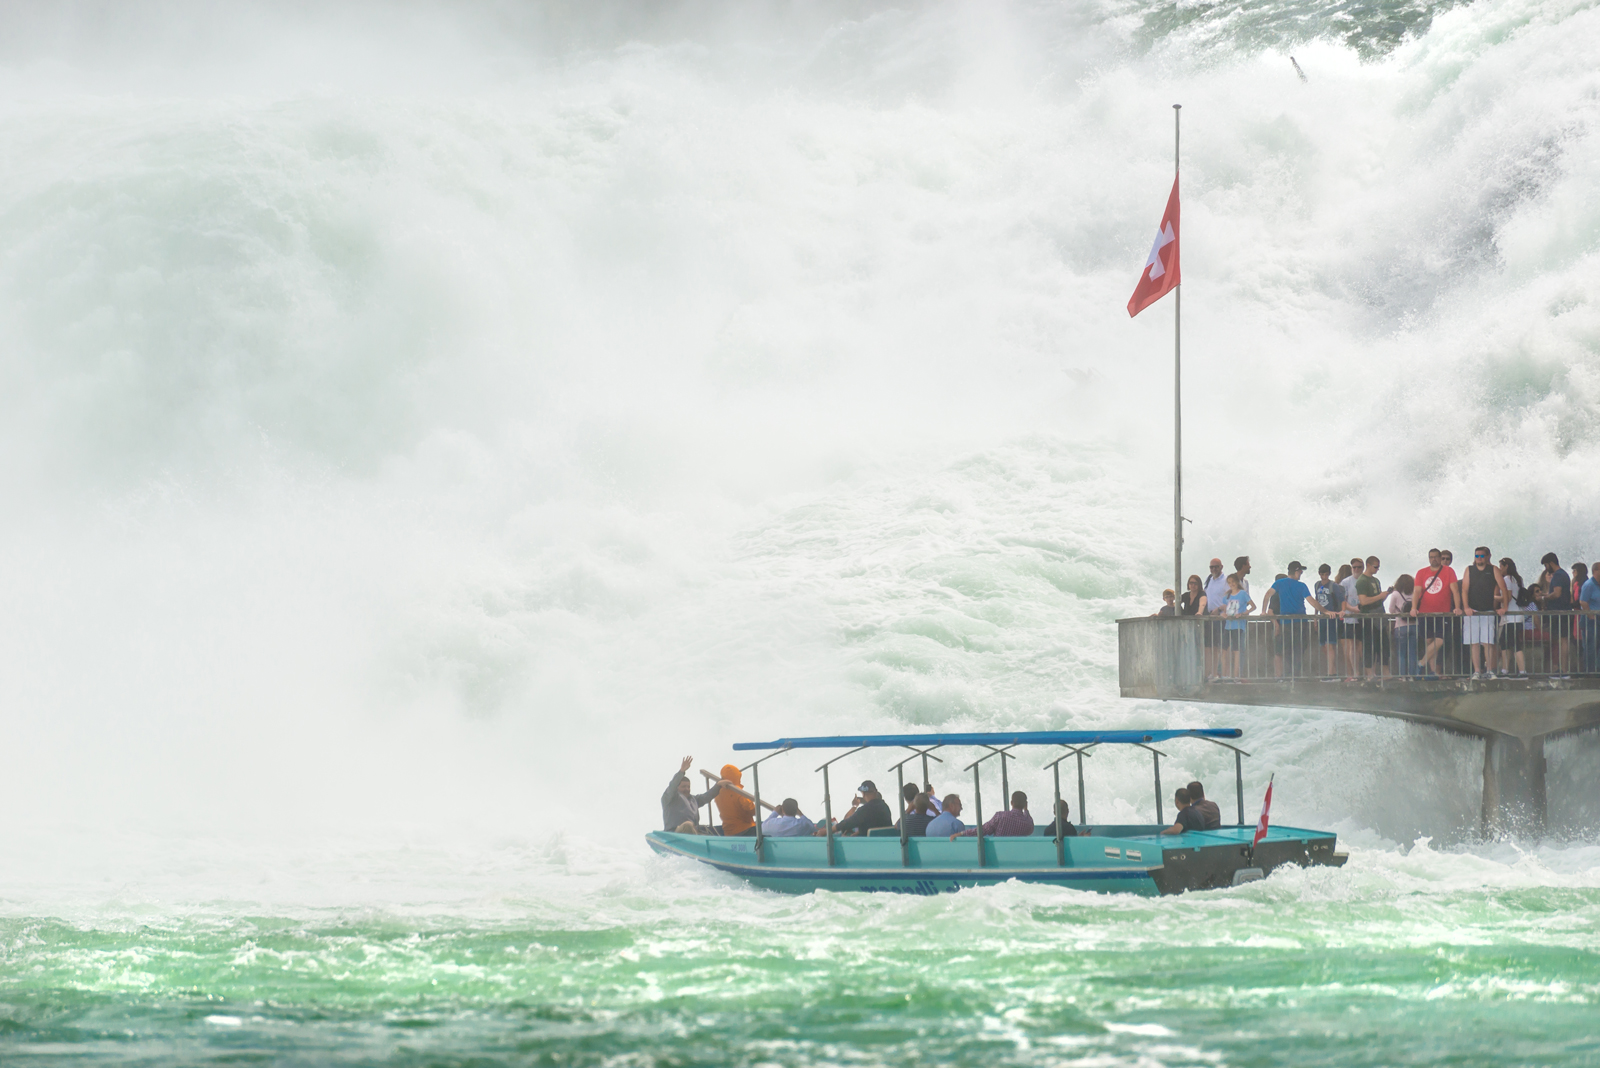 Cruise on the Rhine Falls. Photo @kinek00 via Twenty20